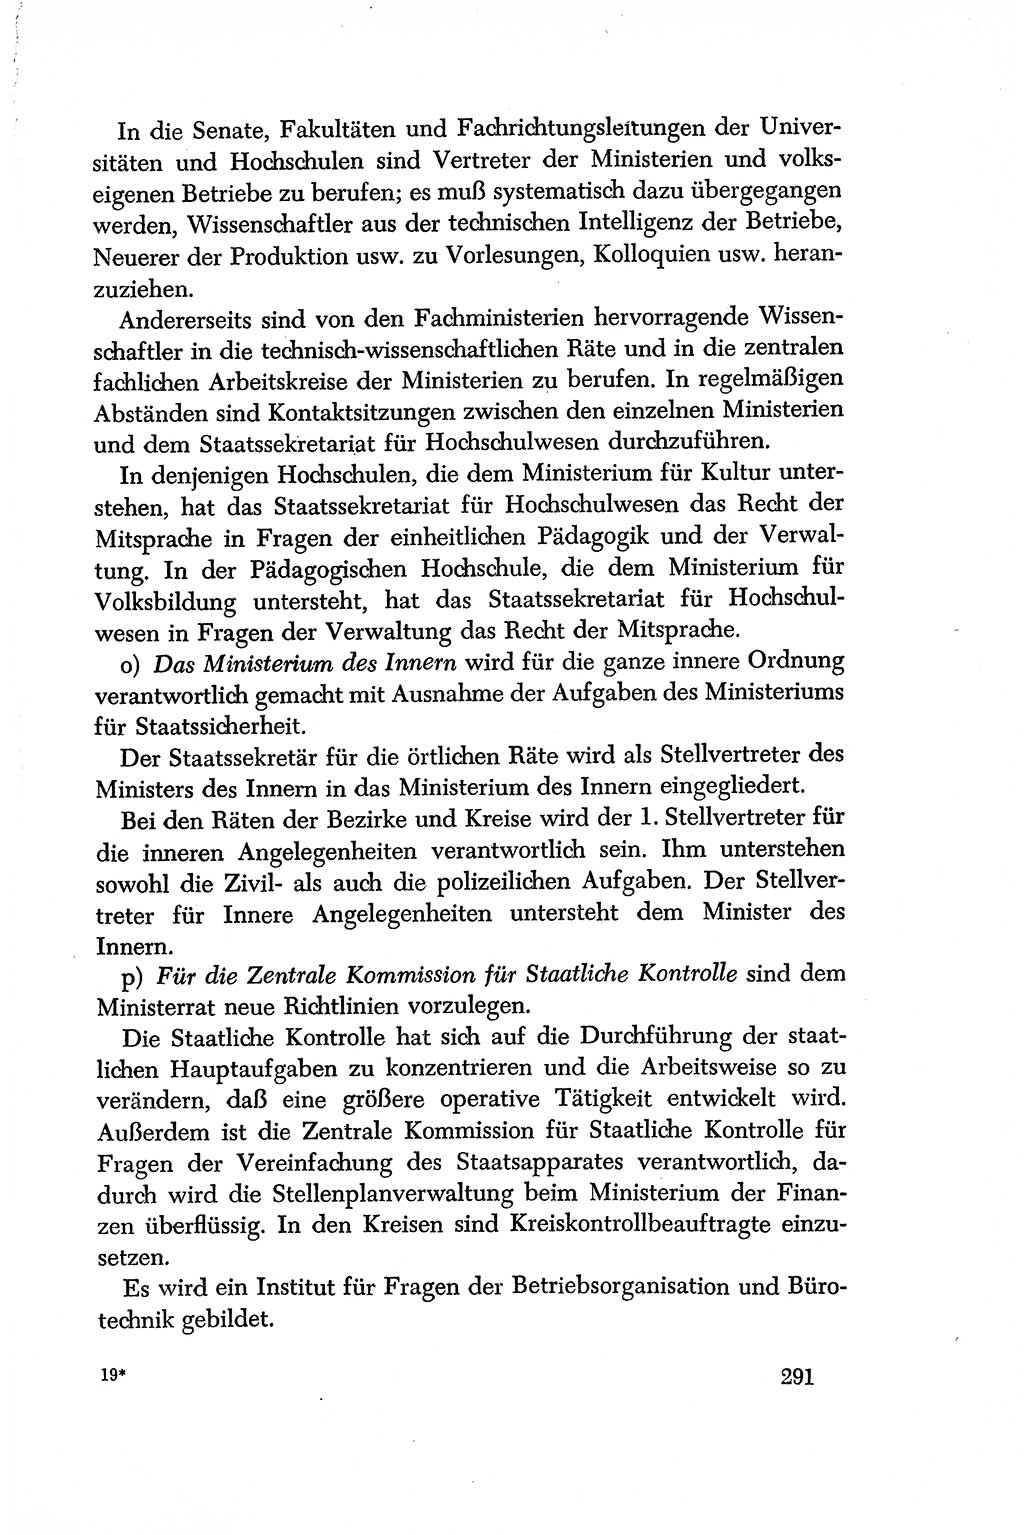 Dokumente der Sozialistischen Einheitspartei Deutschlands (SED) [Deutsche Demokratische Republik (DDR)] 1956-1957, Seite 291 (Dok. SED DDR 1956-1957, S. 291)